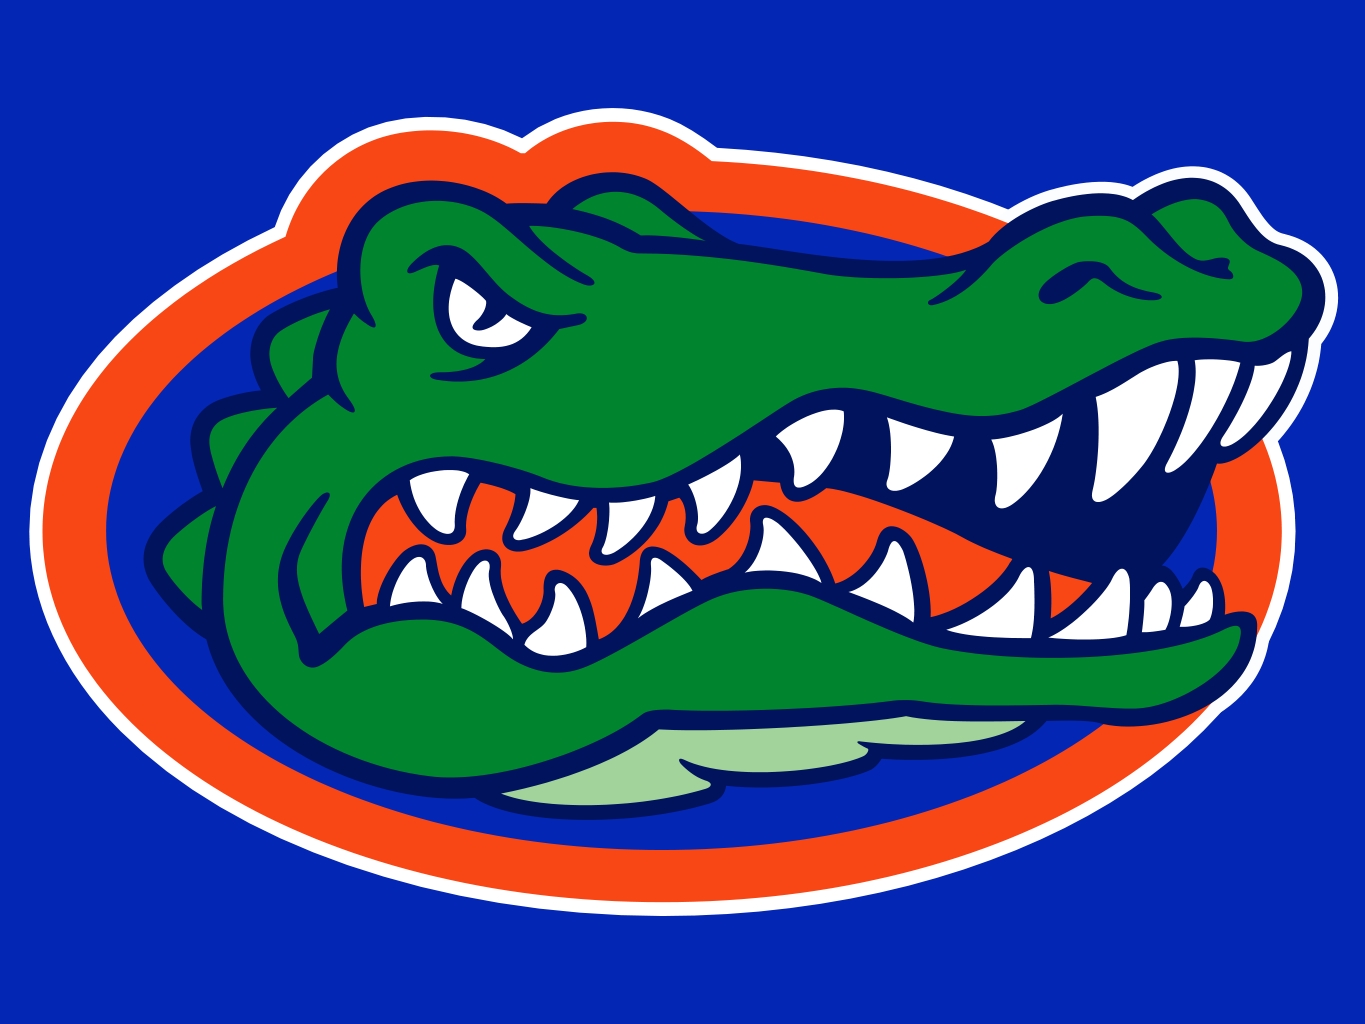 Florida Gators NCAA Football Wiki Fandom